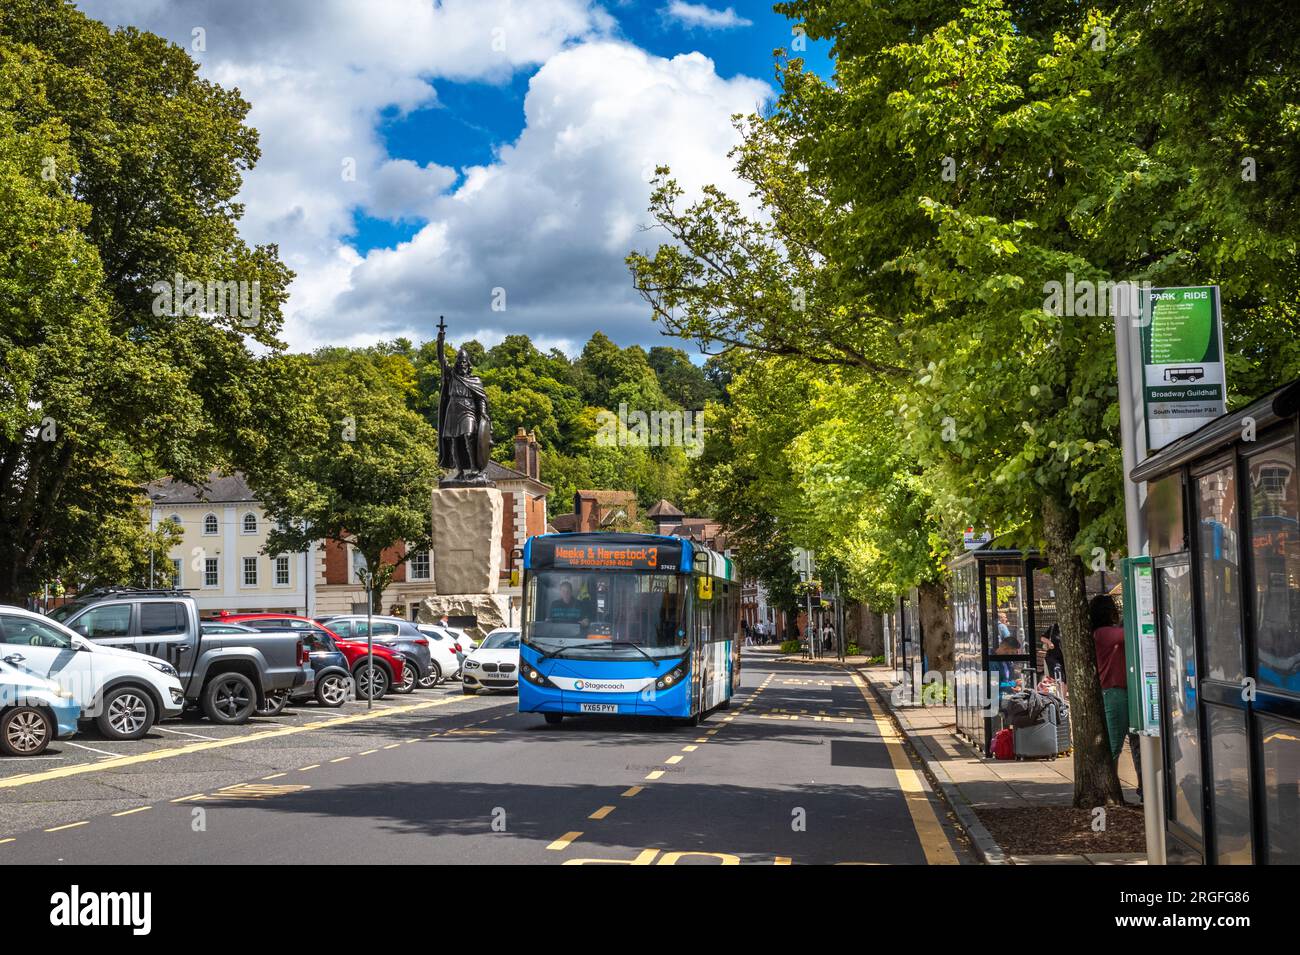 Un autobus blu a un piano passa accanto alle fermate dell'autobus accanto alla gigantesca statua di Re Alfredo il grande a Broadway a Winchester, Hampshire, Regno Unito. Foto Stock